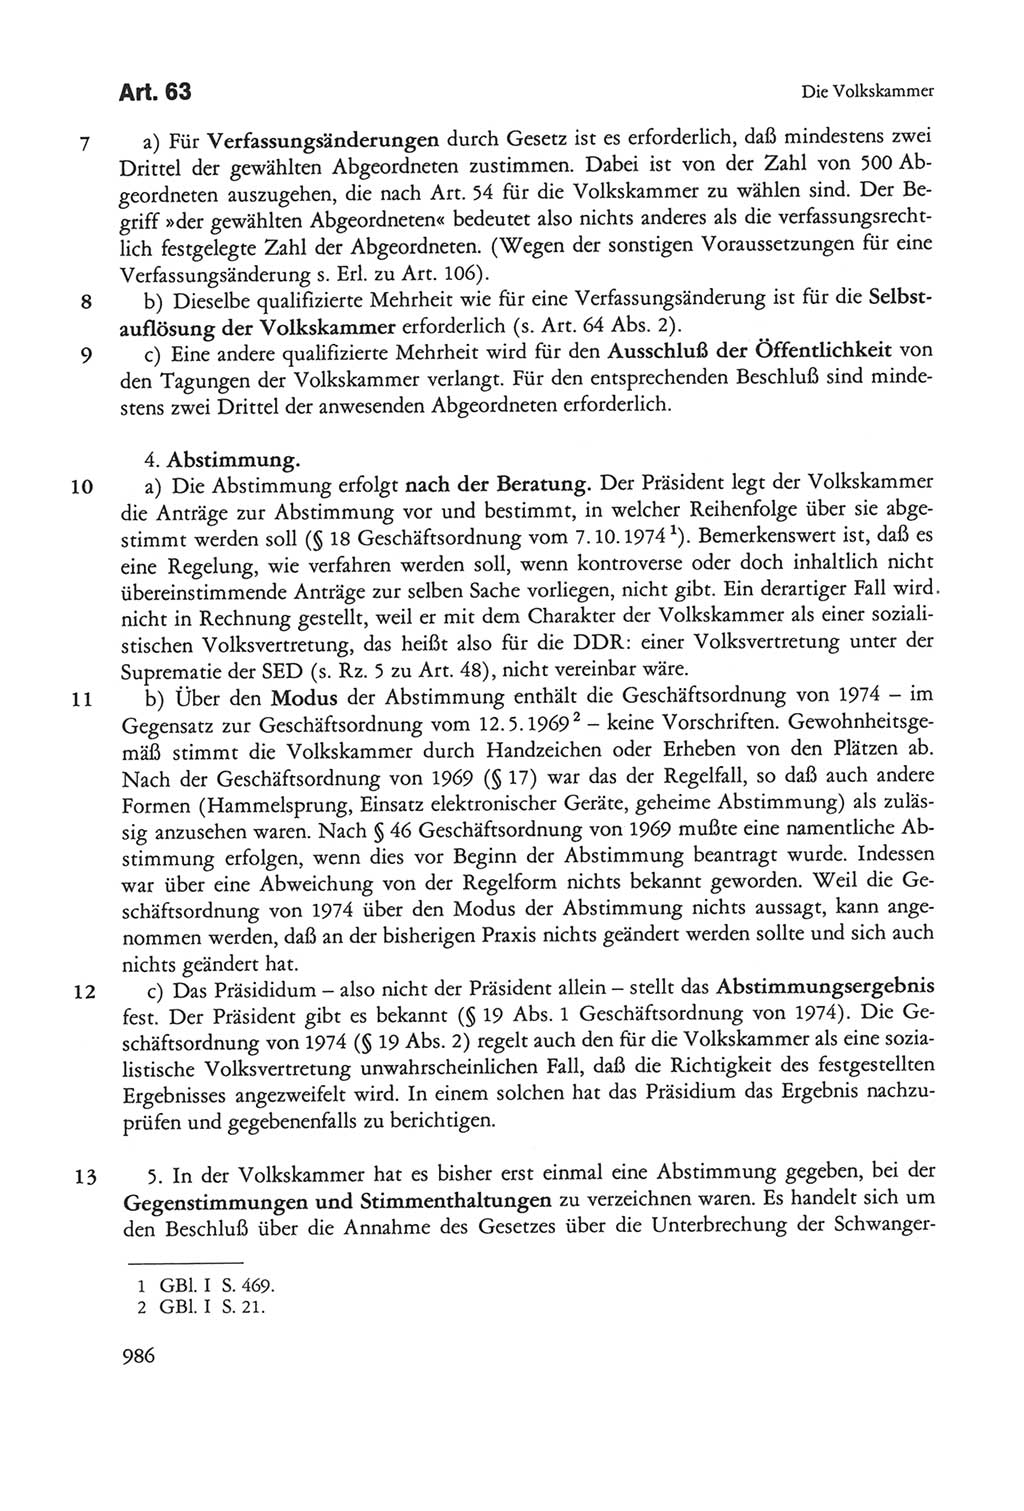 Die sozialistische Verfassung der Deutschen Demokratischen Republik (DDR), Kommentar 1982, Seite 986 (Soz. Verf. DDR Komm. 1982, S. 986)